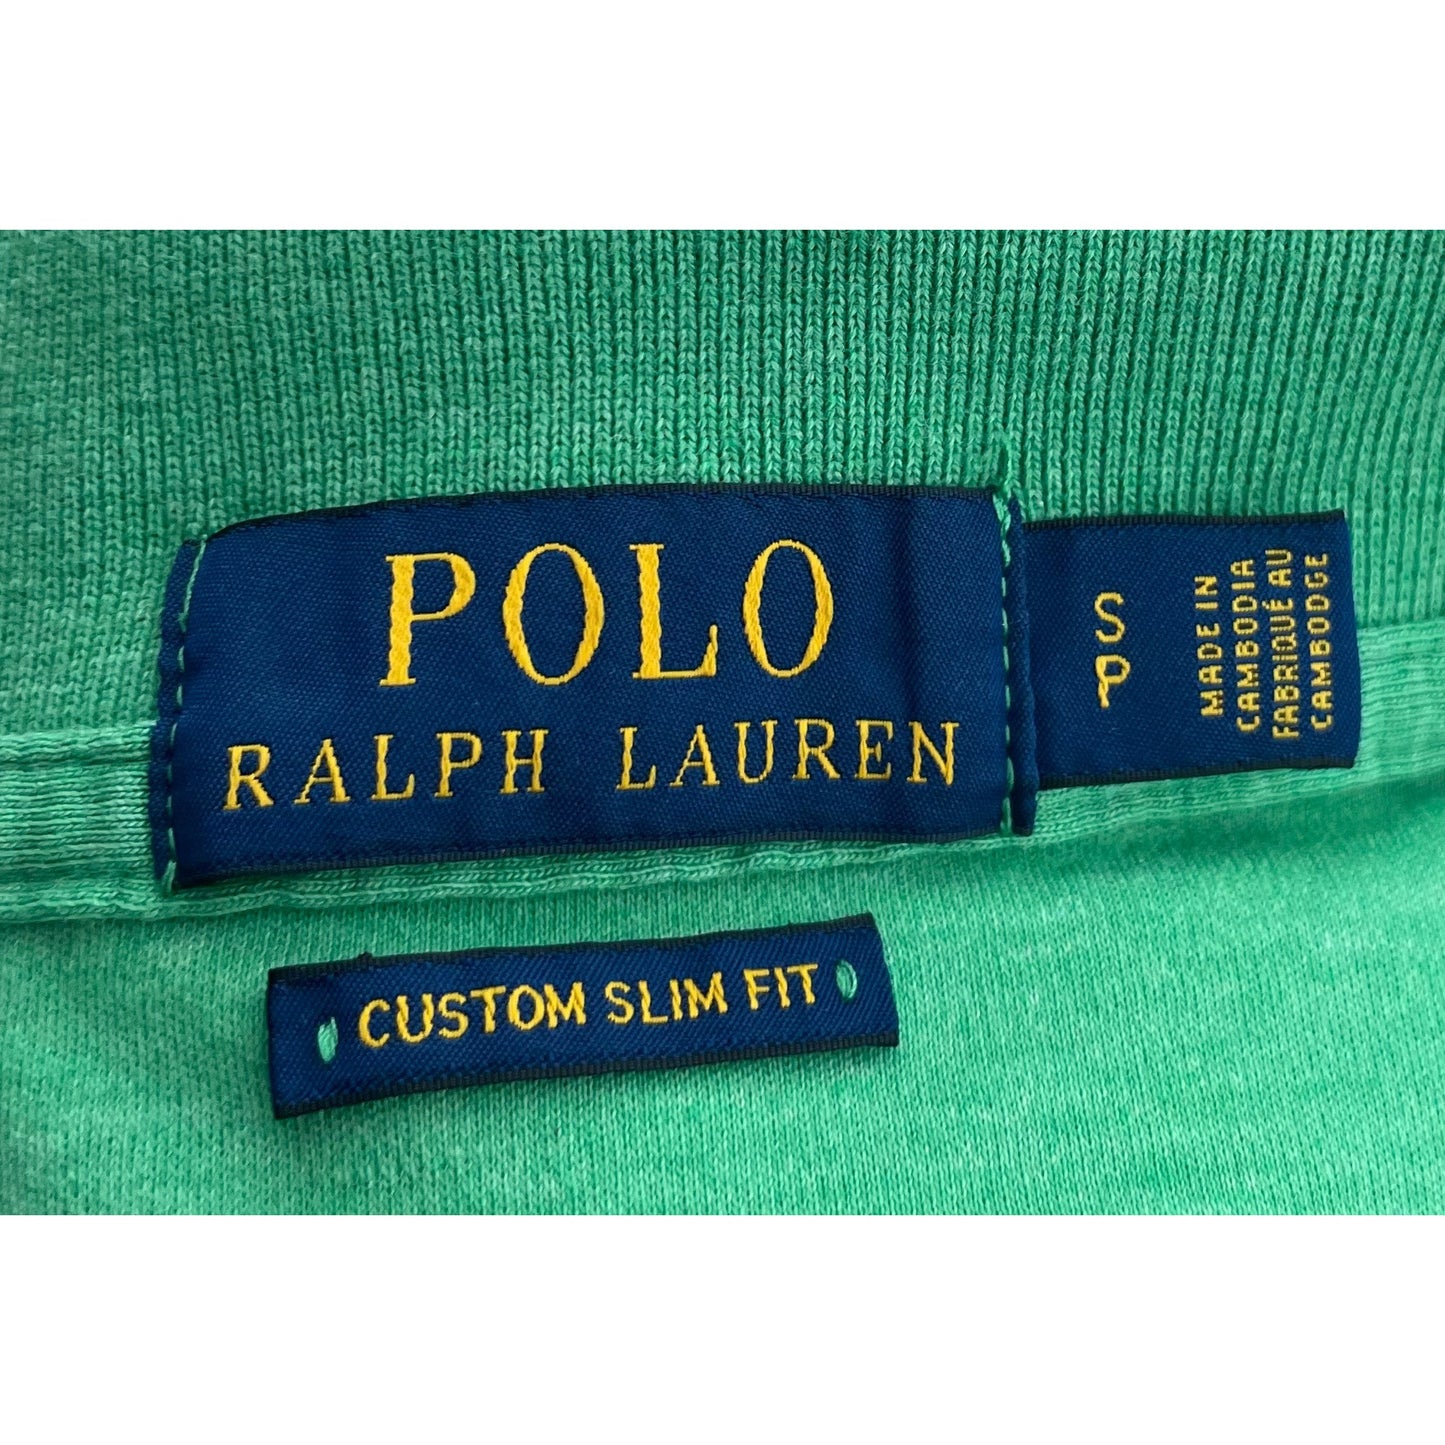 POLO Ralph Lauren Men's Size Small Green Collared Polo Shirt